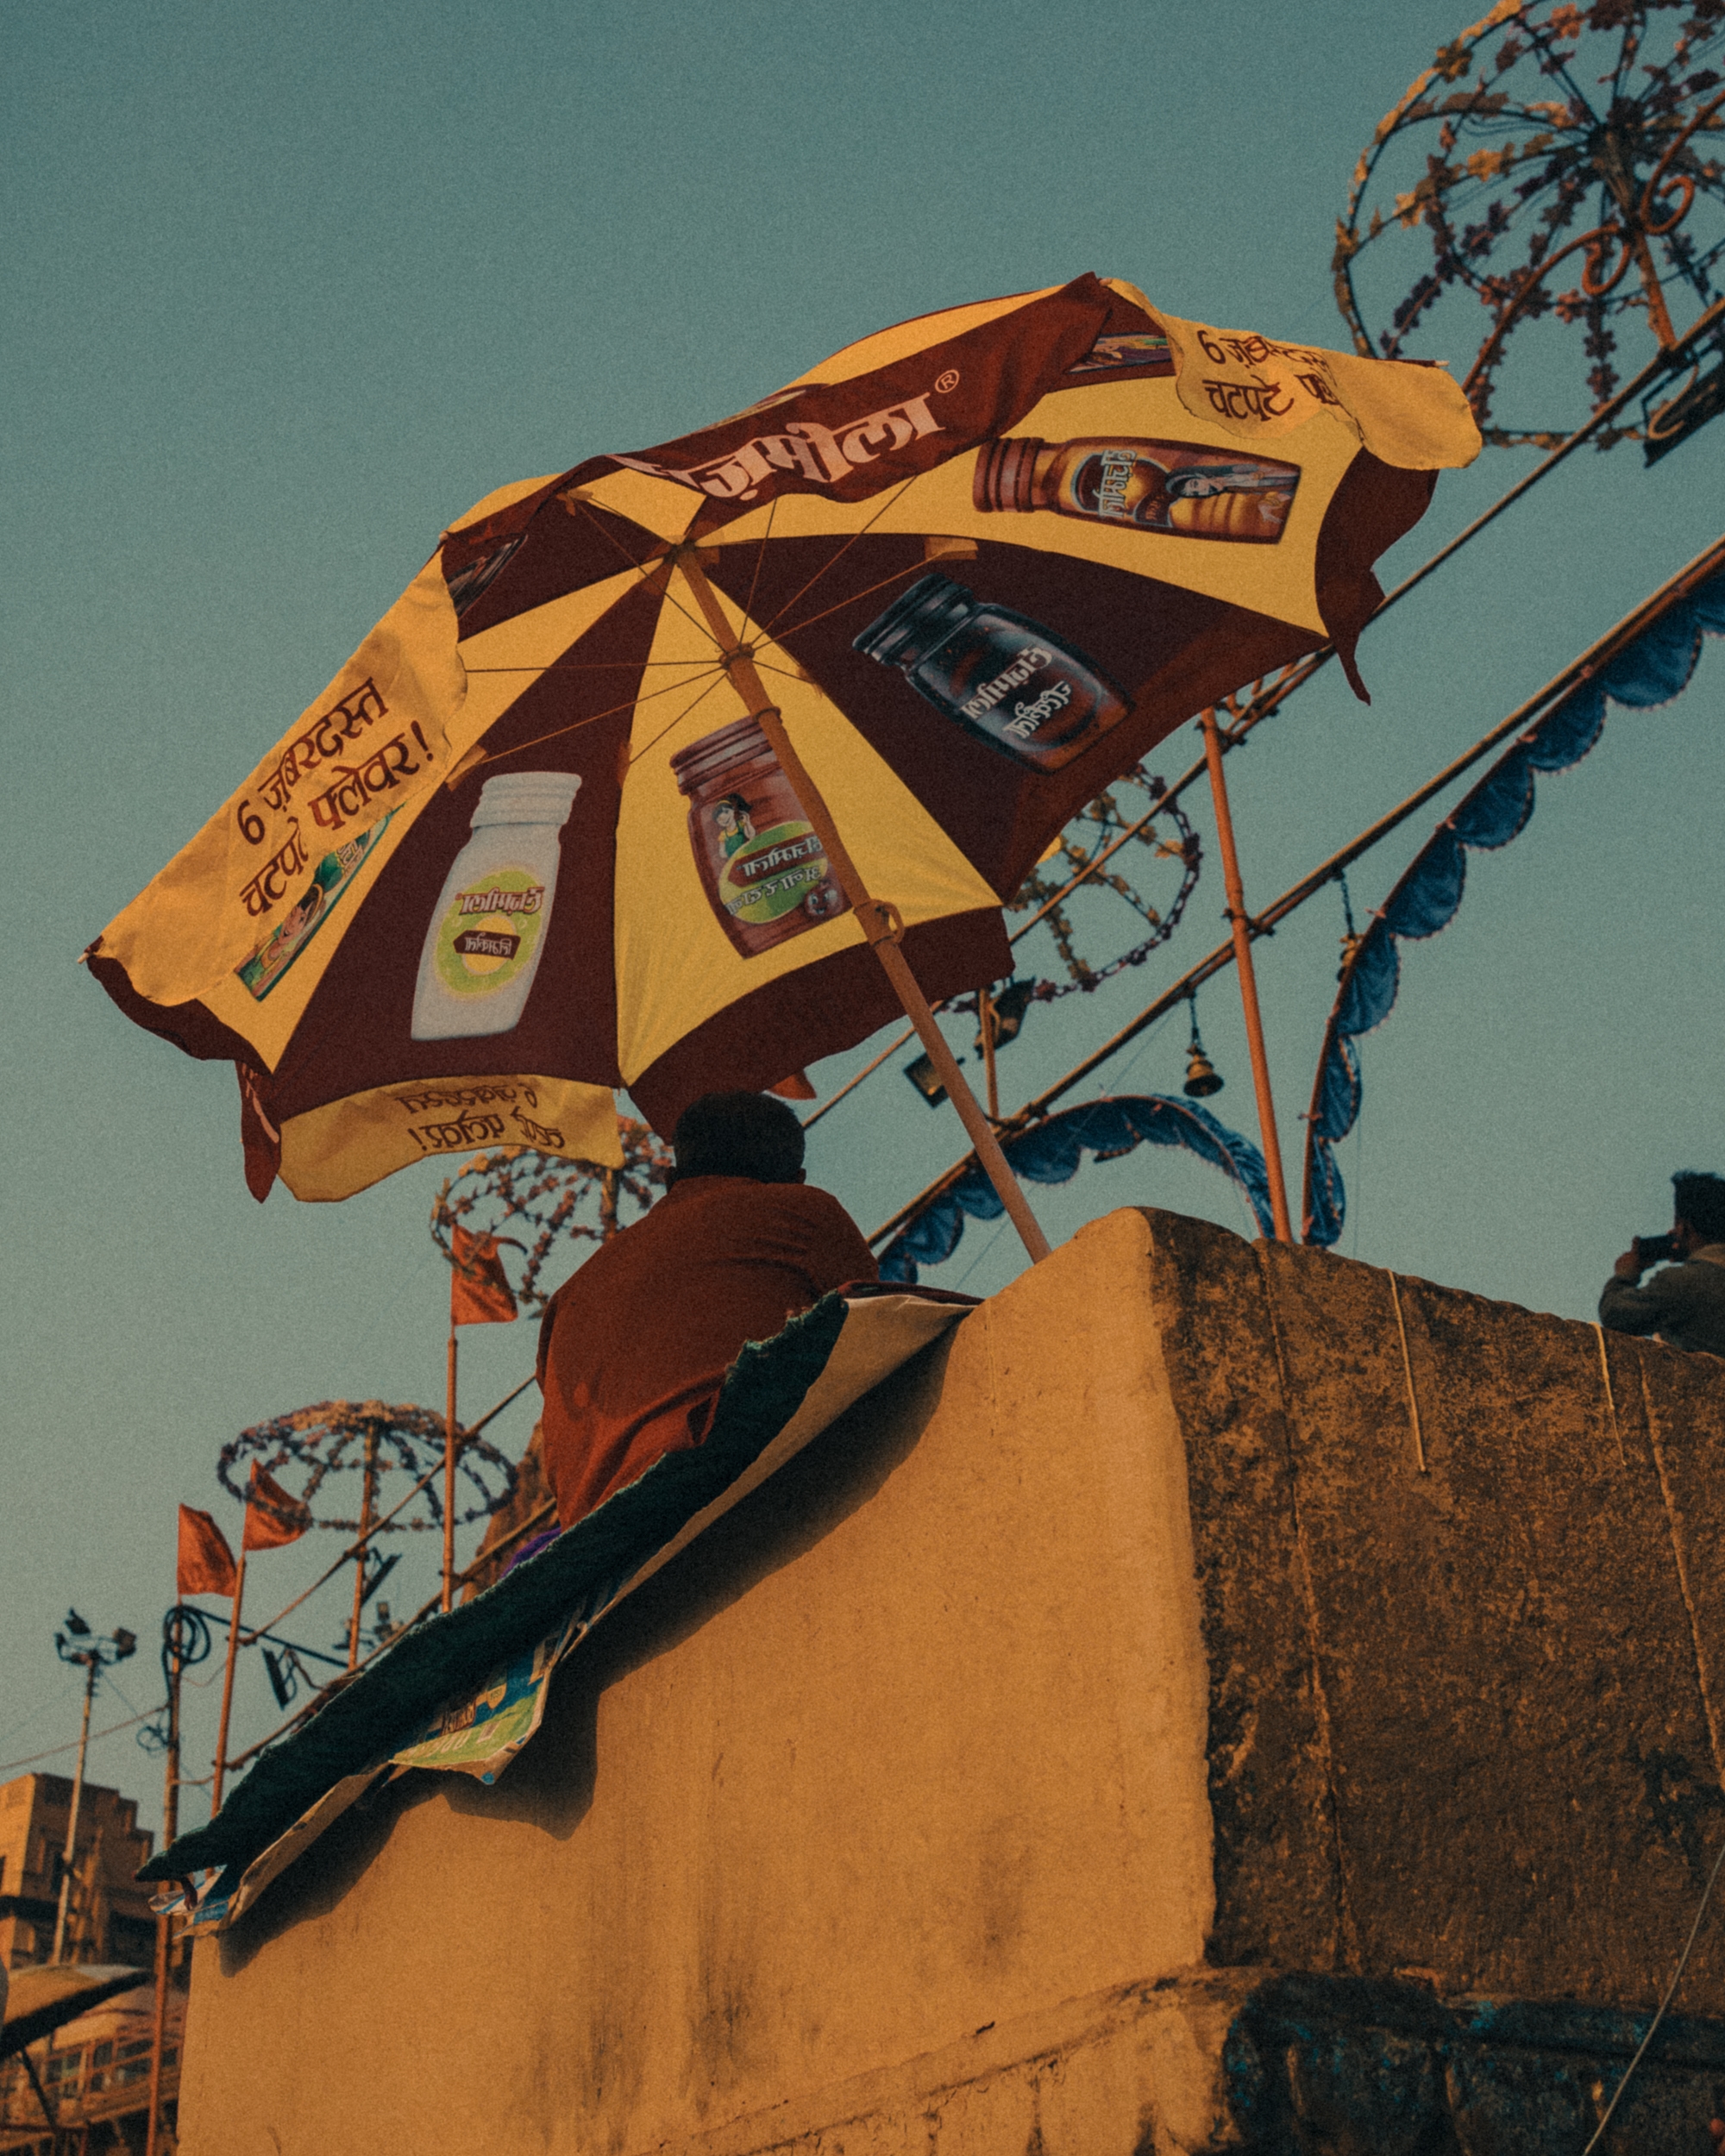 Vendeur sous parasol, Inde